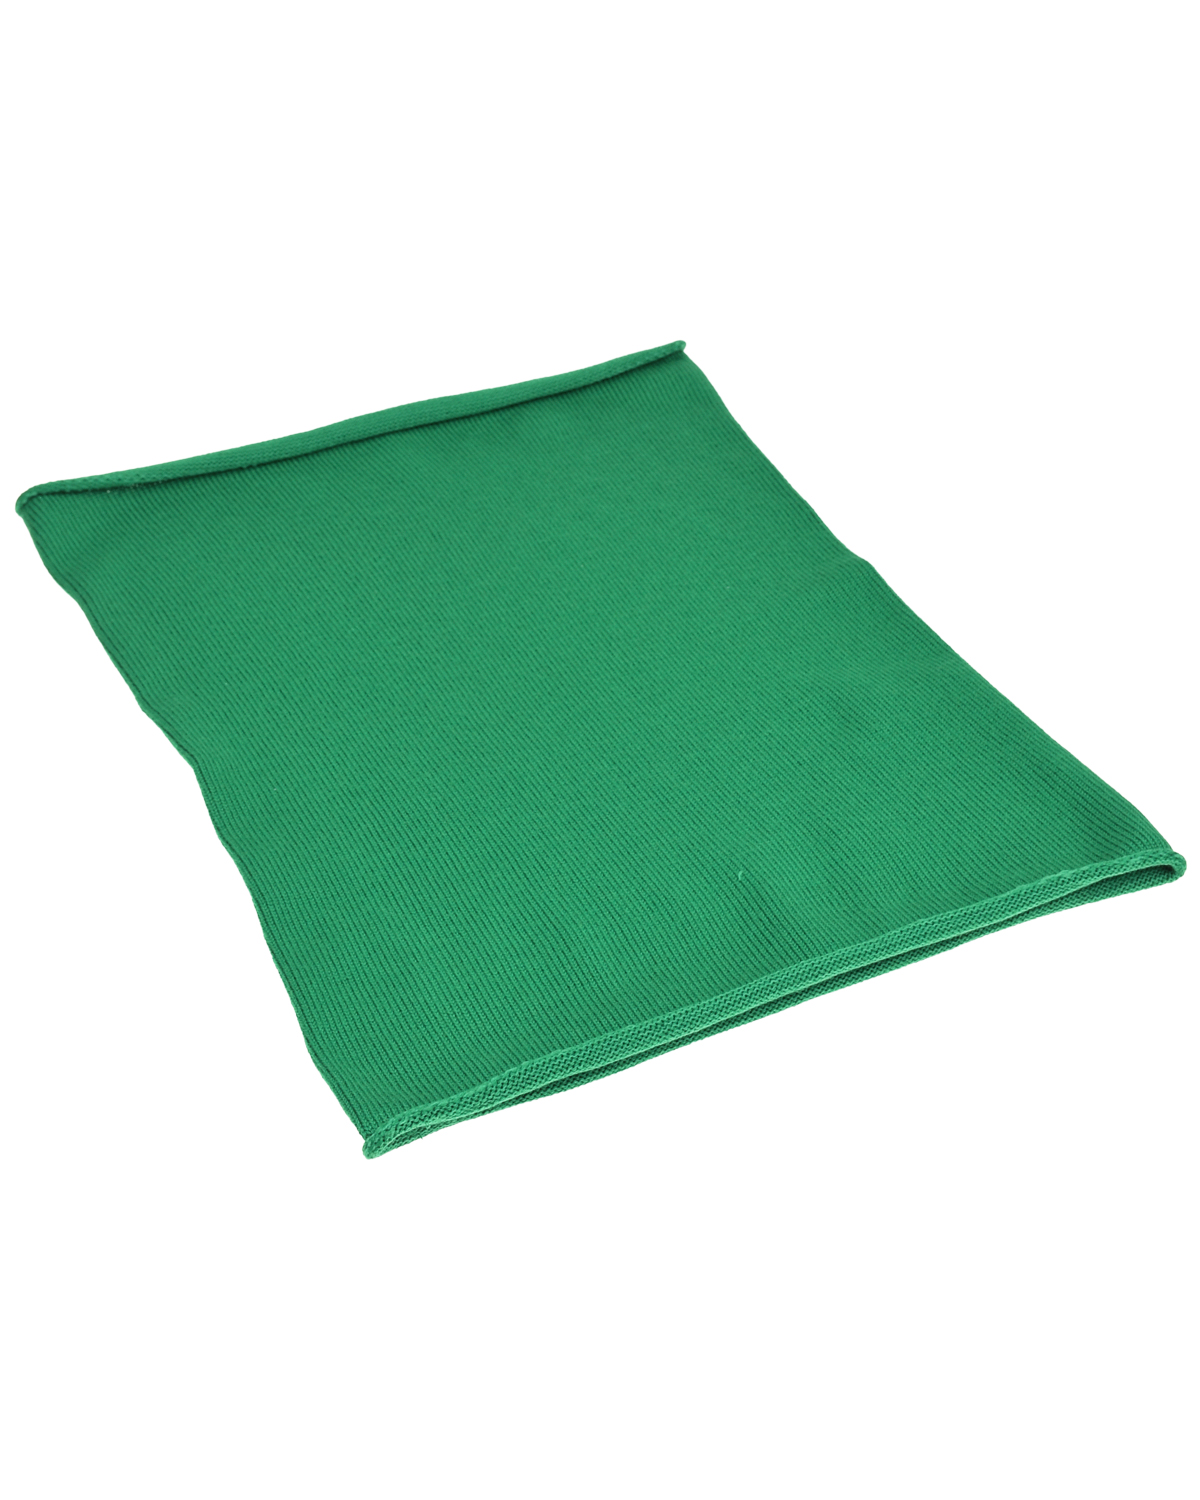 Зеленый шарф-горло, 30x41 см Norveg детский, размер unica